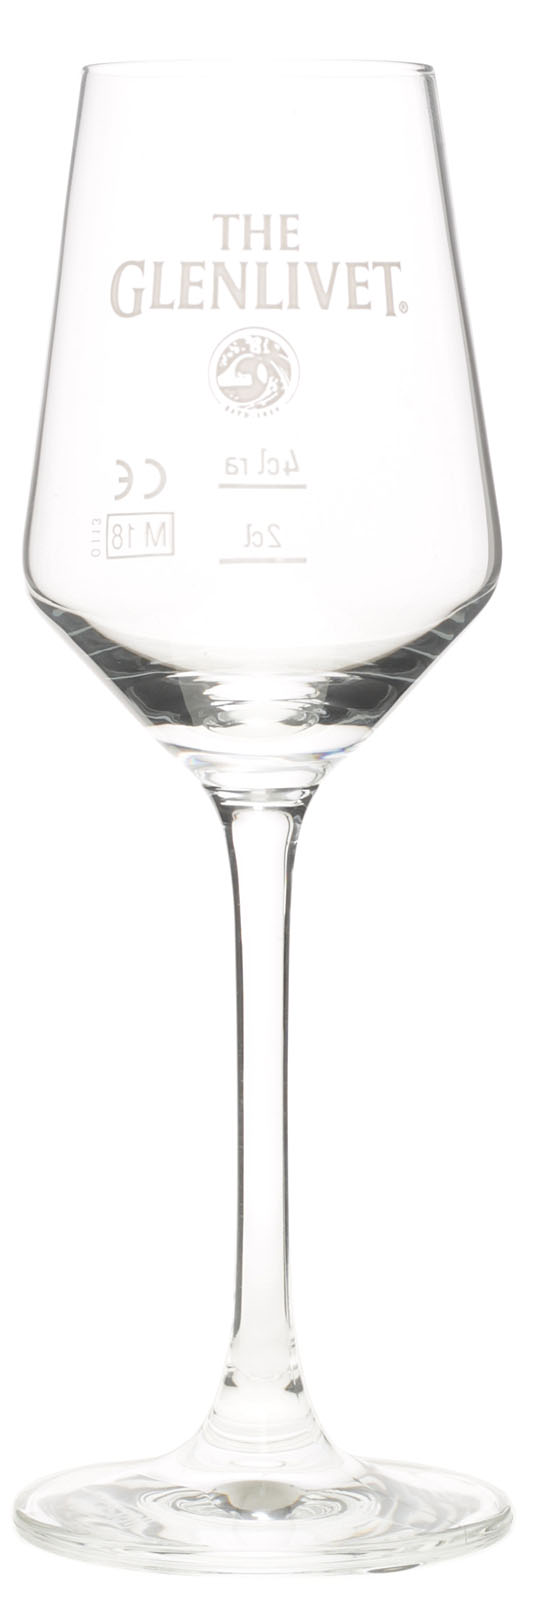 765 The Glenlivet Scotch Whisky Tastingglas langer dicker Stiel Nosing Gläser 